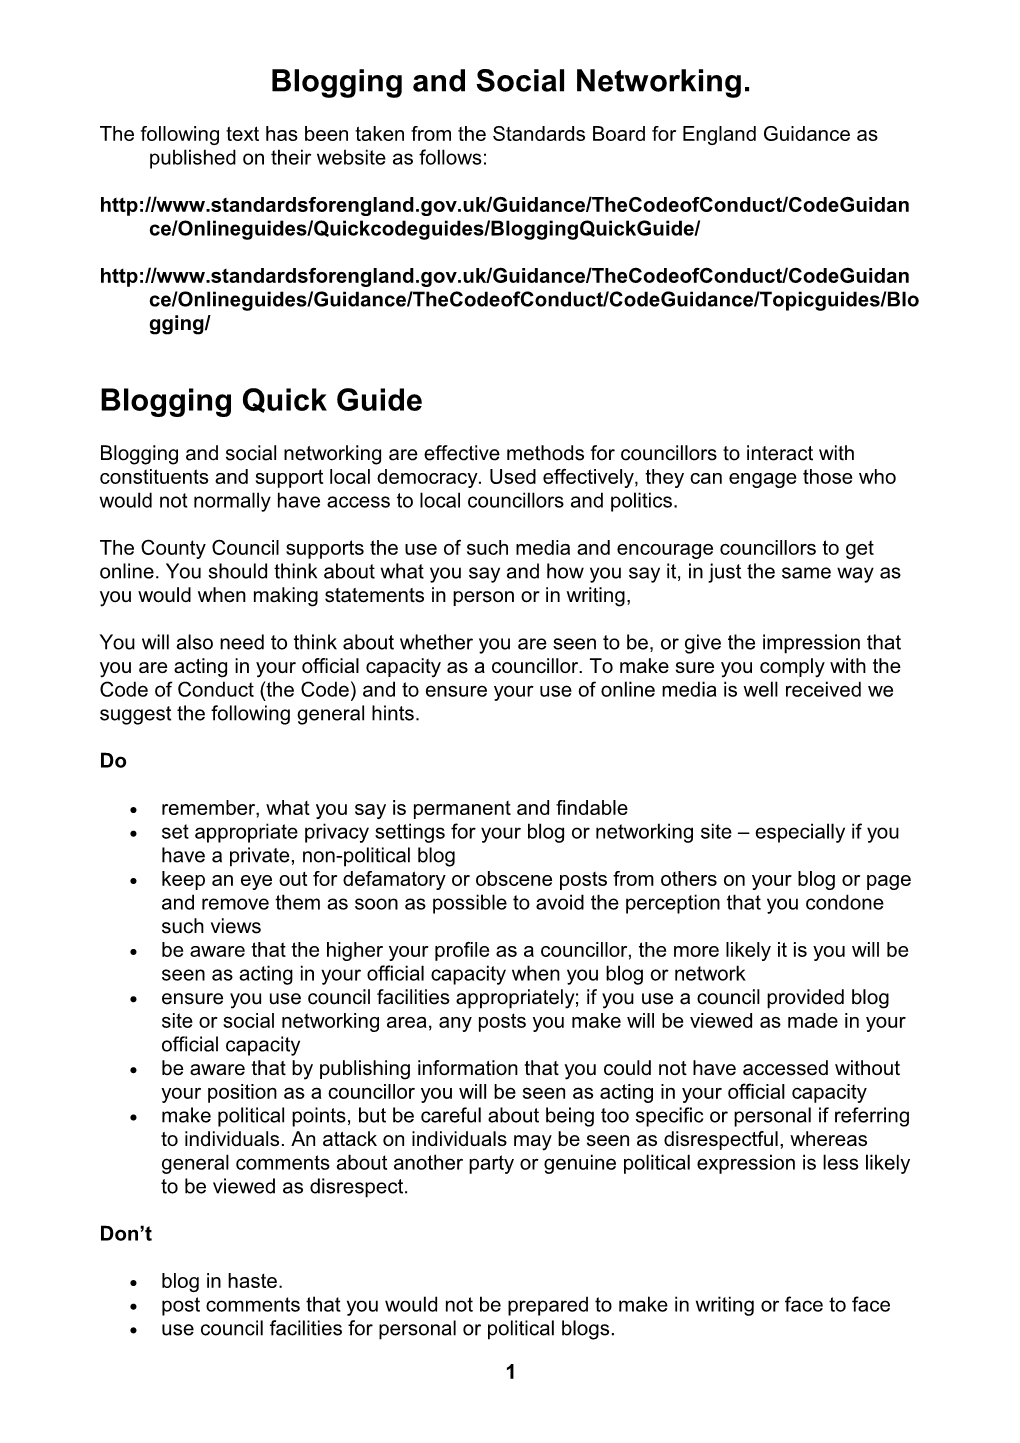 Blogging Quick Guide